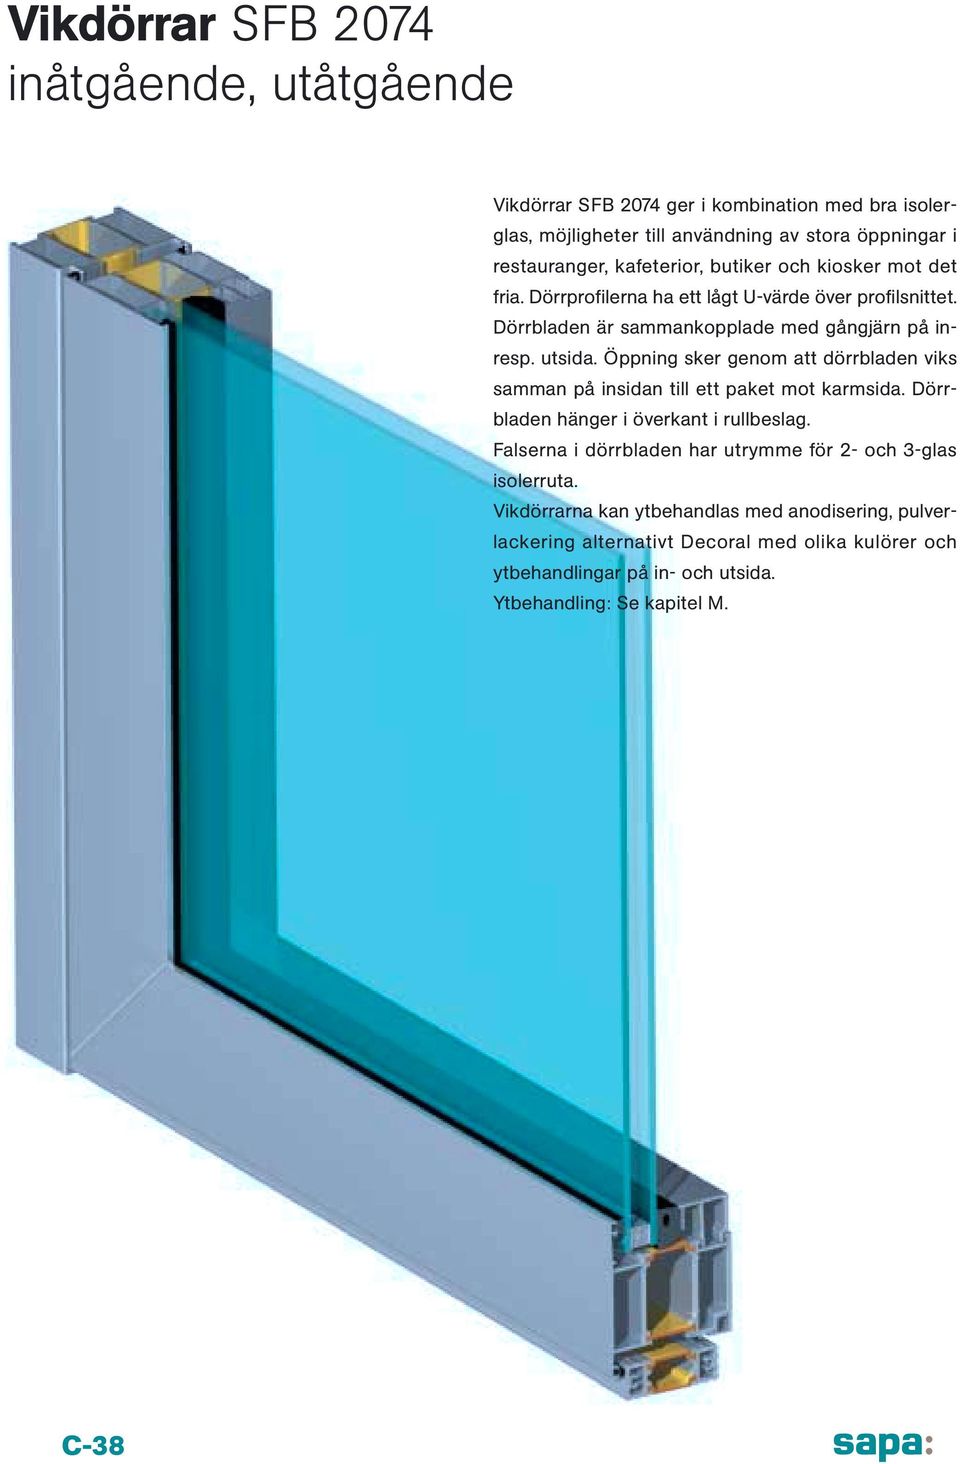 Öppning sker genom att dörrbladen viks samman på insidan till ett paket mot karmsida. Dörrbladen hänger i överkant i rullbeslag.